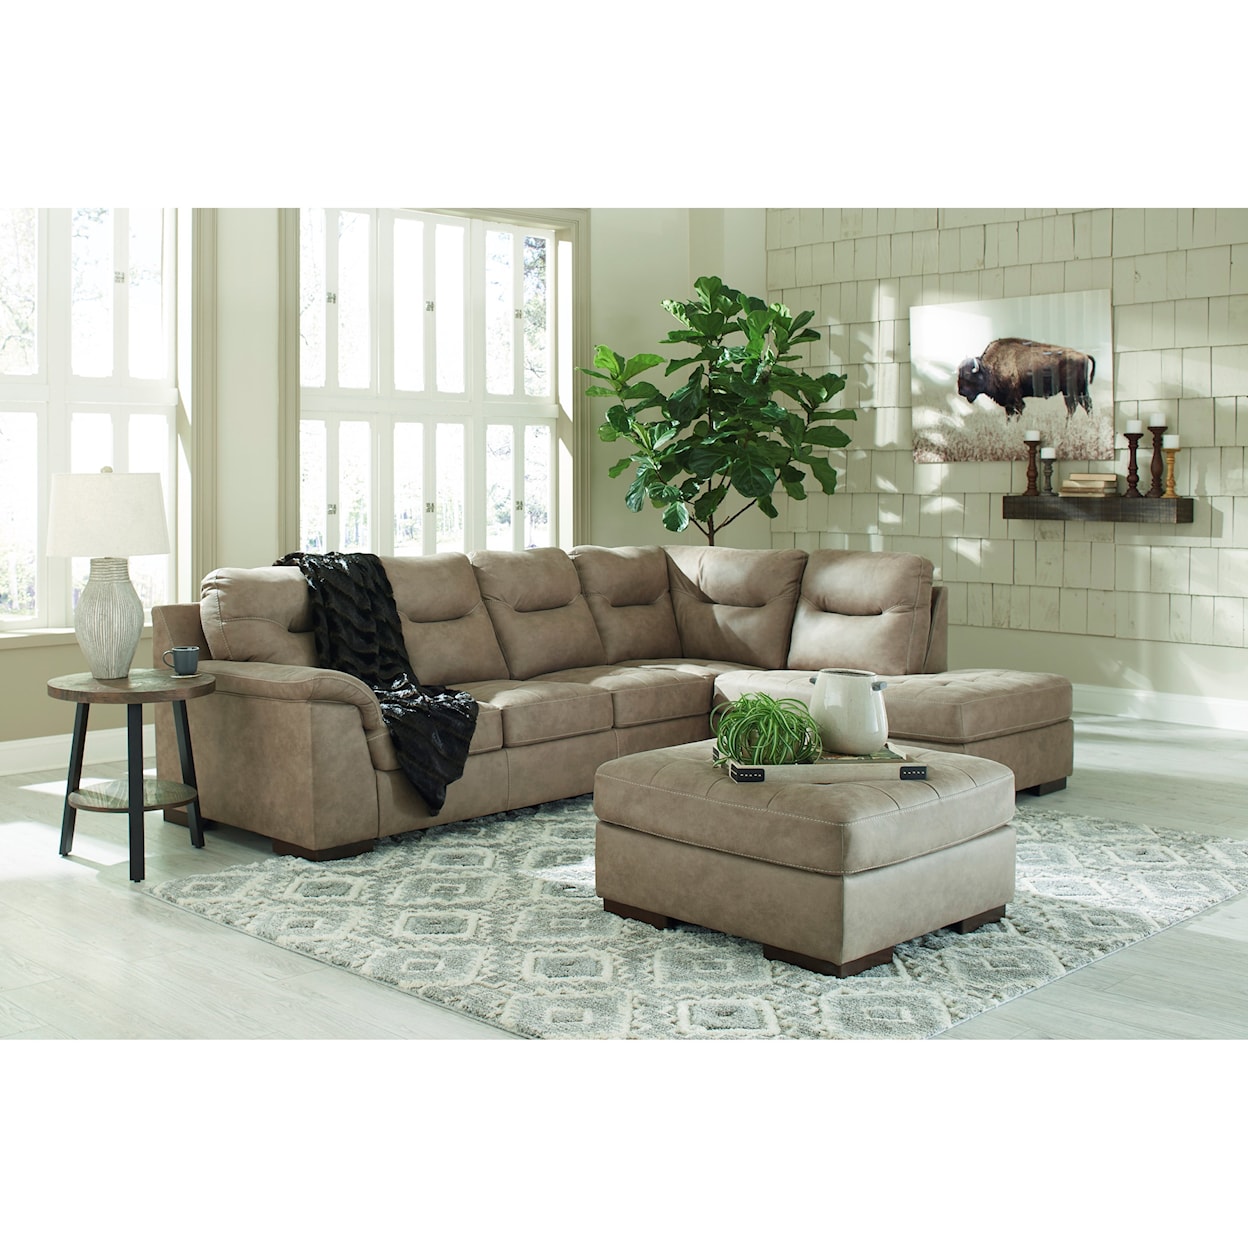 Ashley Furniture Signature Design Maderla Living Room Group